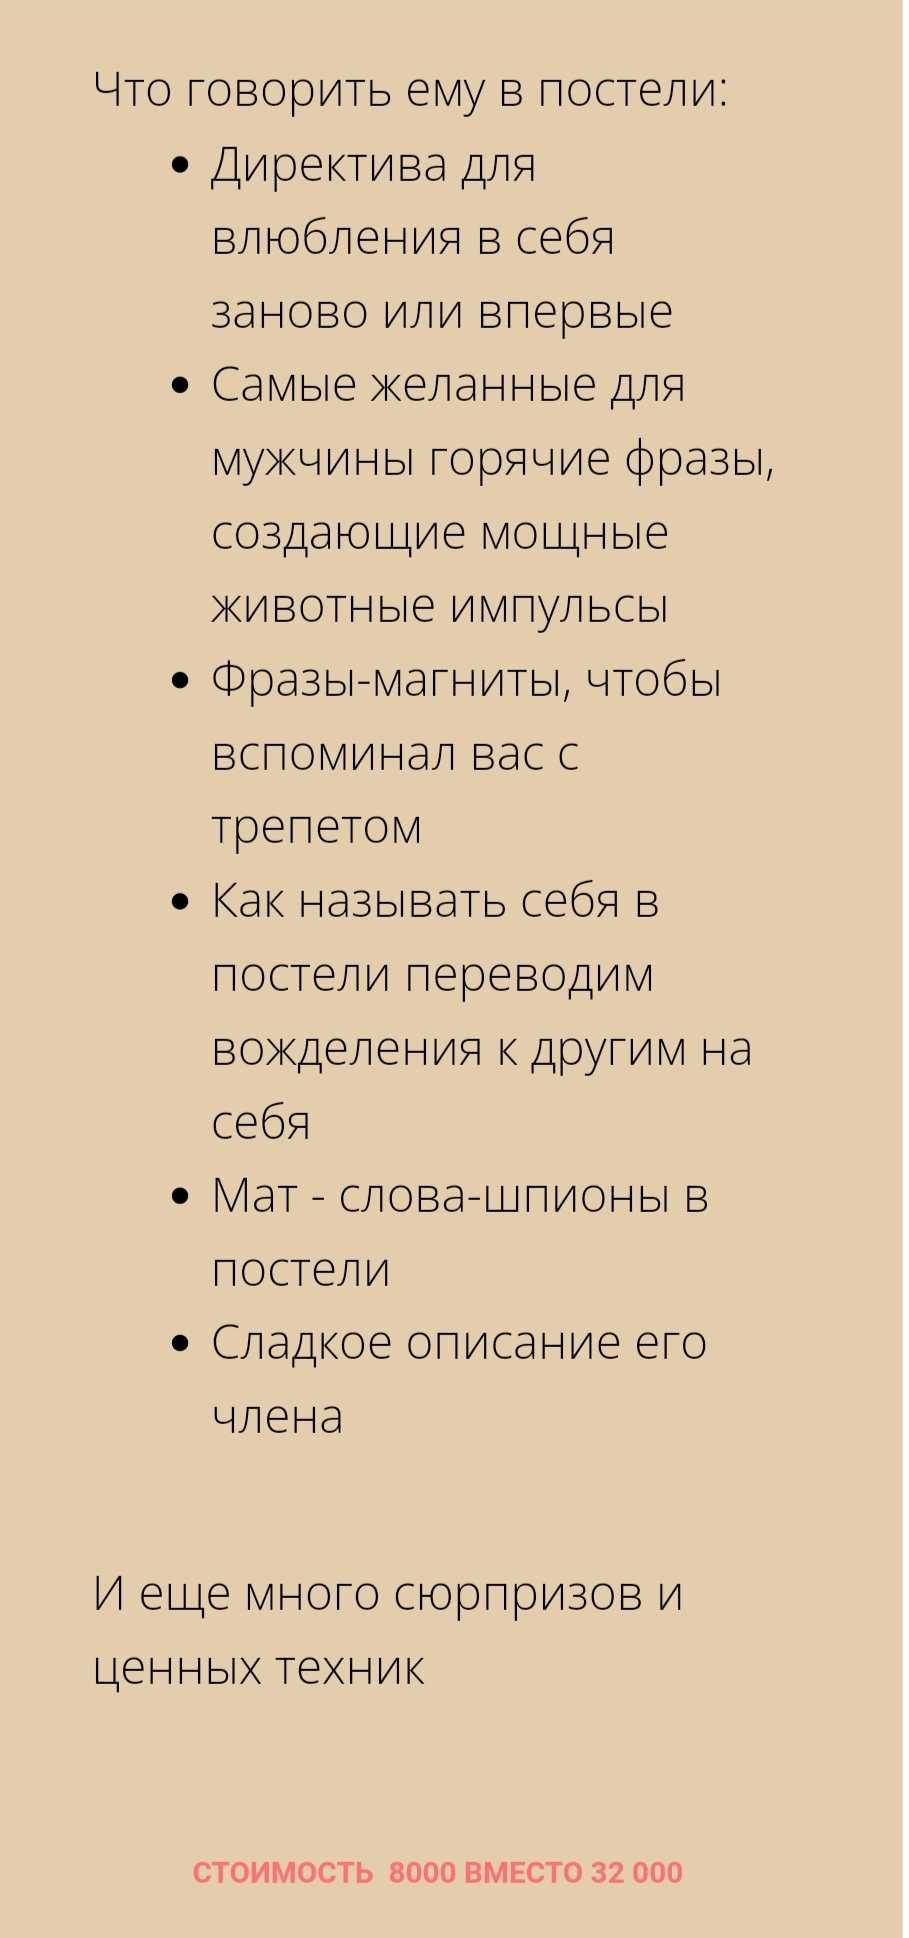 Программирование мужчины в постели Екатерина Любимова